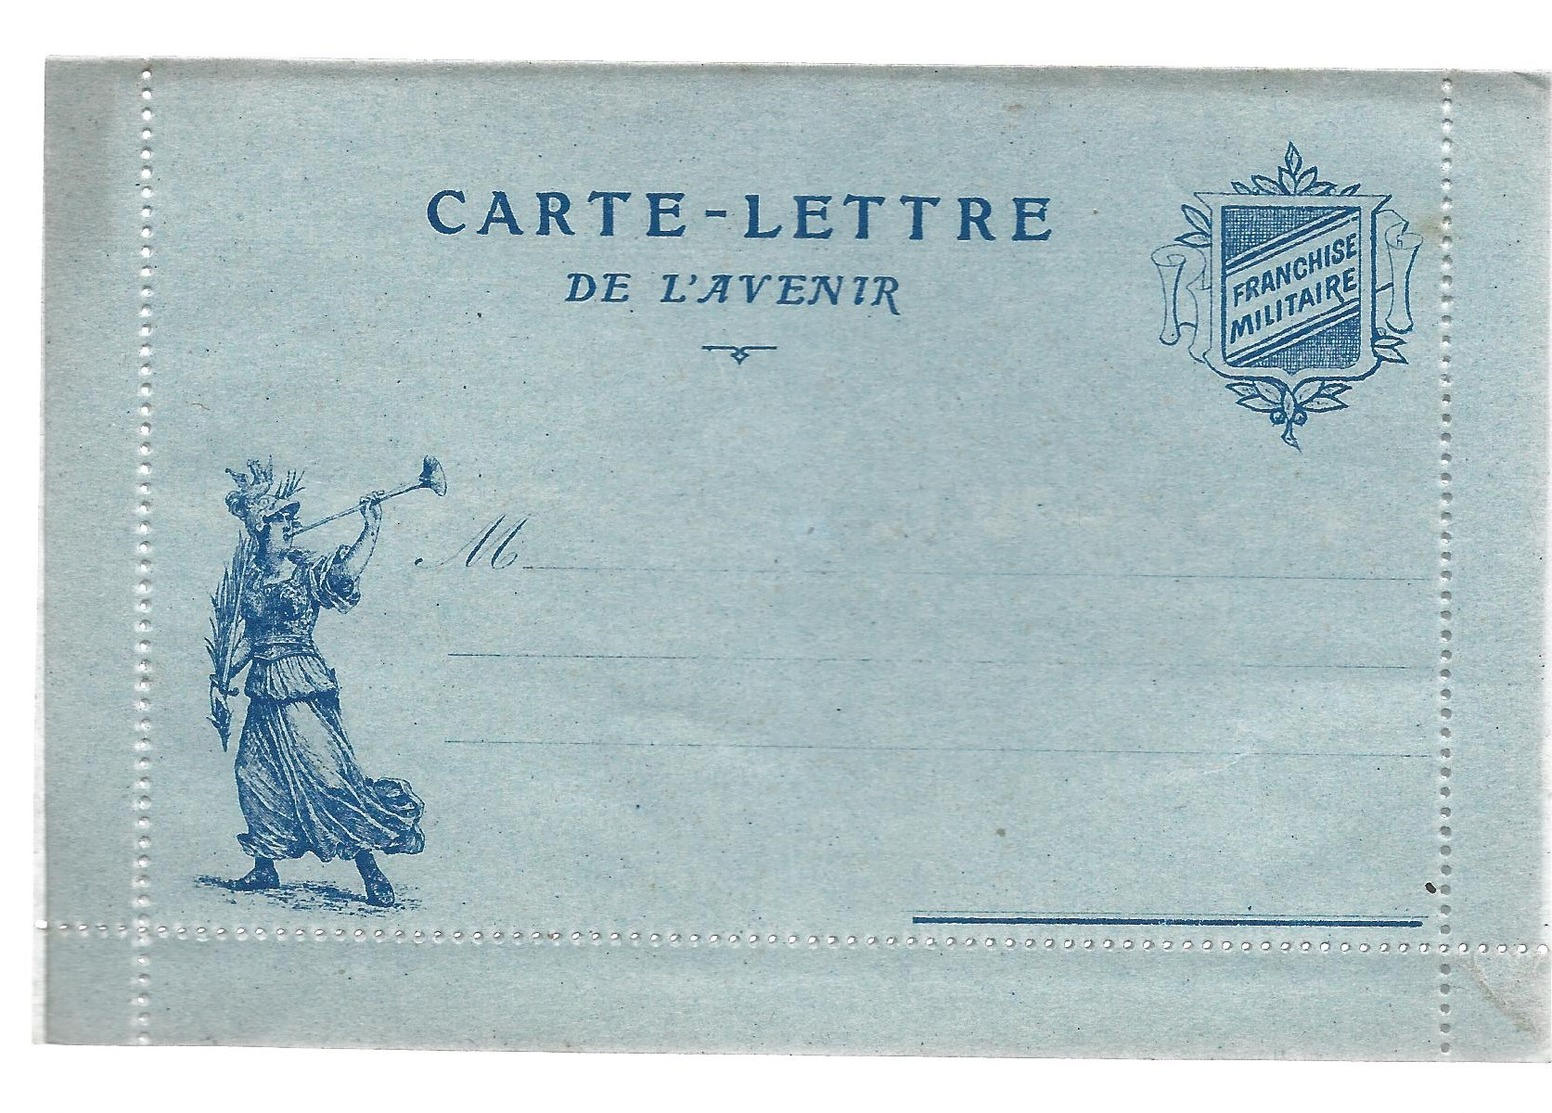 CARTE EN FRANCHISE MILITAIRE  - CARTE LETTRE DE L'AVENIR  - NON ECRITE - TRES BON ETAT - Covers & Documents